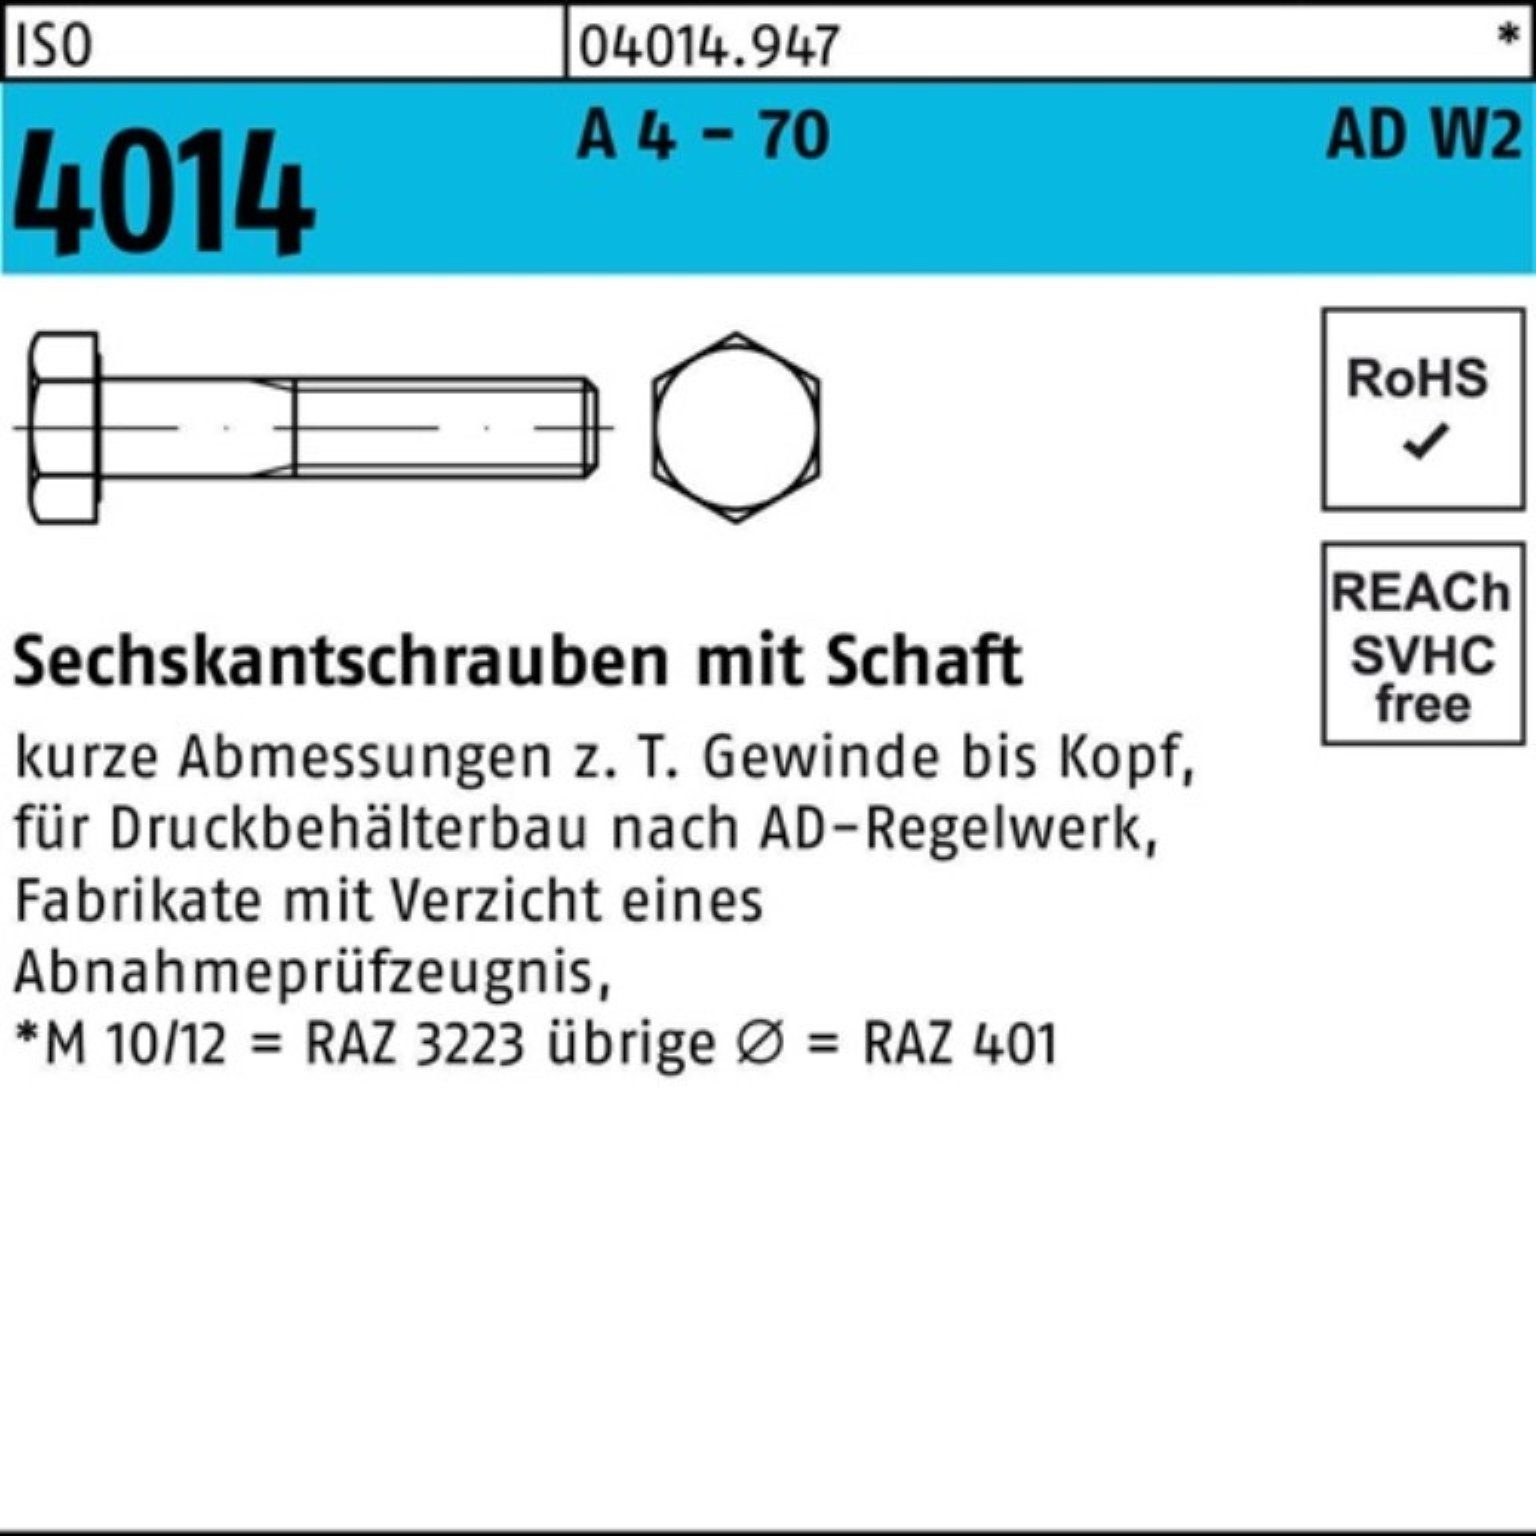 Bufab Sechskantschraube 100er Pack Sechskantschraube ISO 4014 Schaft M10x 150 A 4 - 70 AD-W2 1